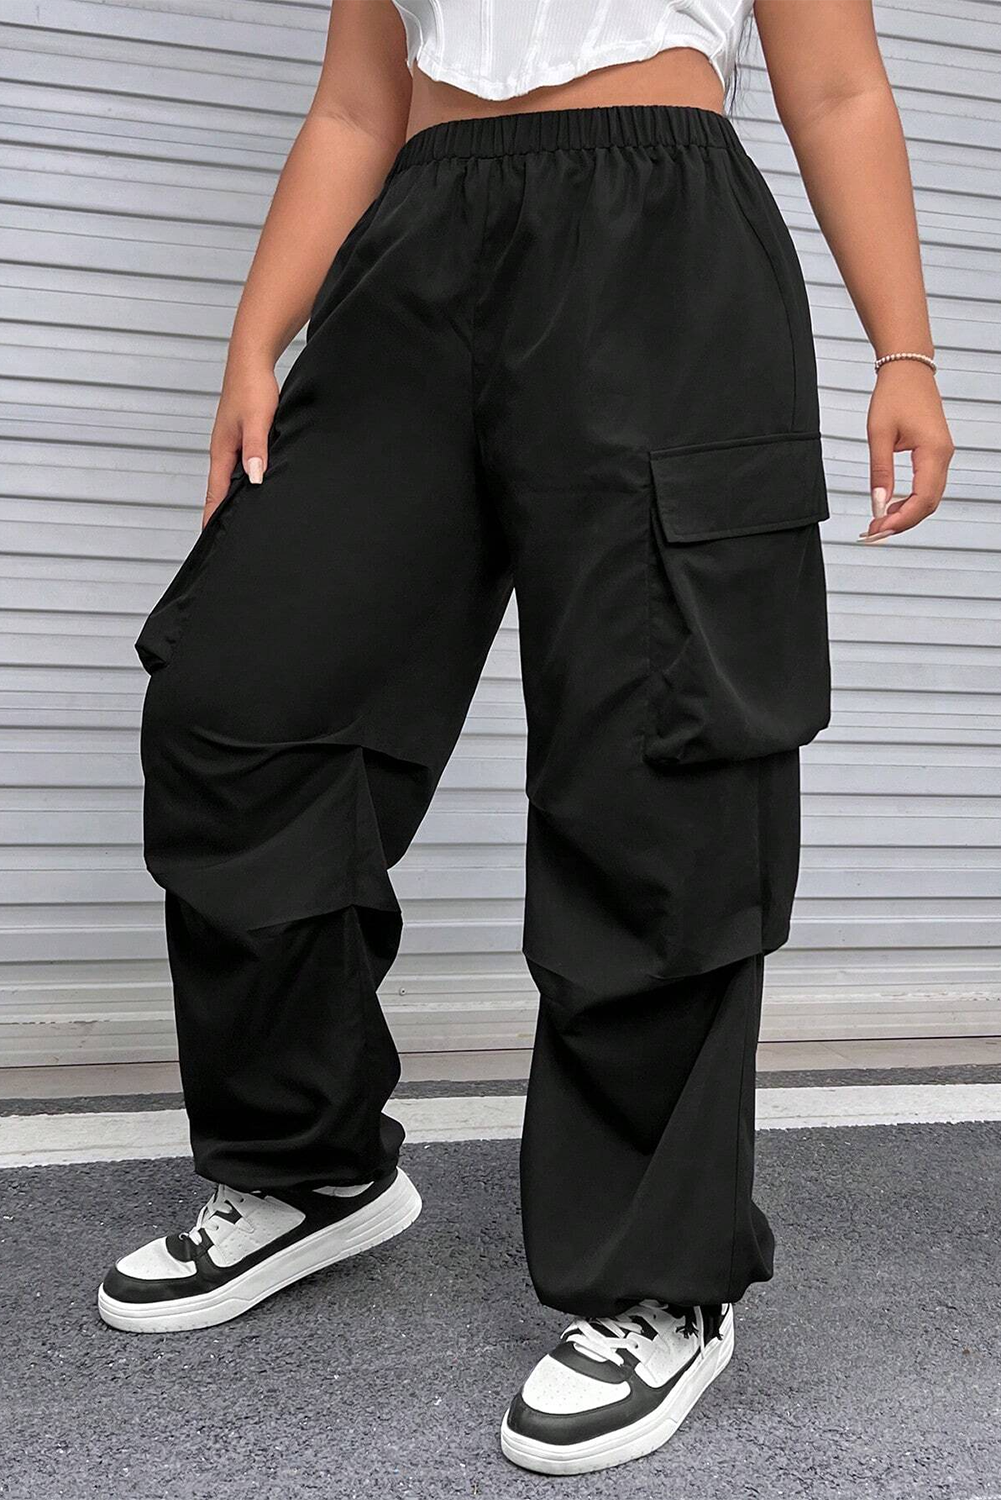 Black Plus Size Flap Pocket Elastic Waist Cargo Pants - SELFTRITSS